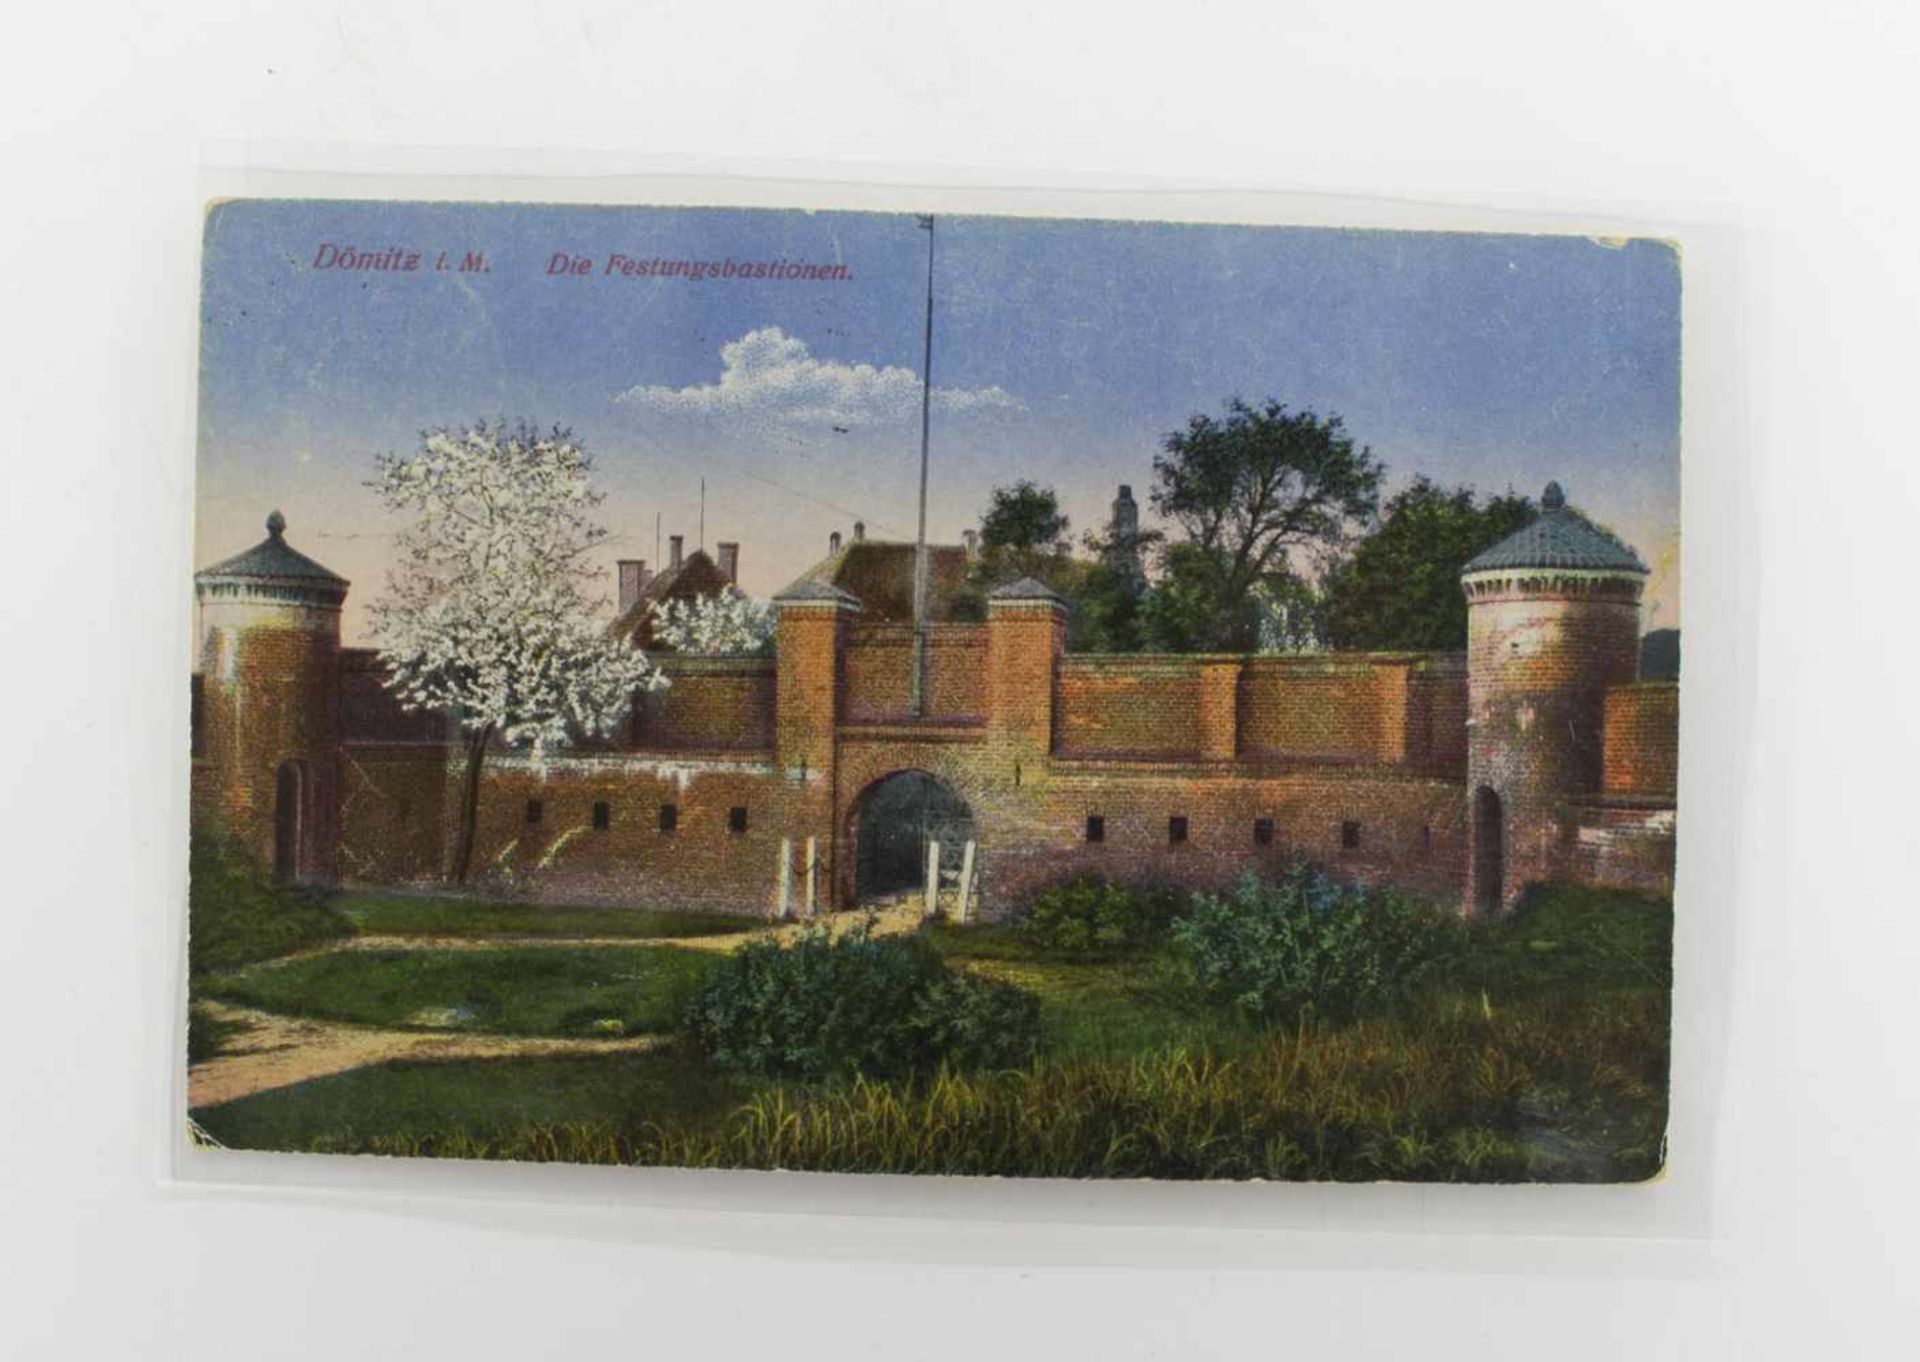 AnsichtskarteDömitz/ Mecklenburg, Festungsanlagen 1923